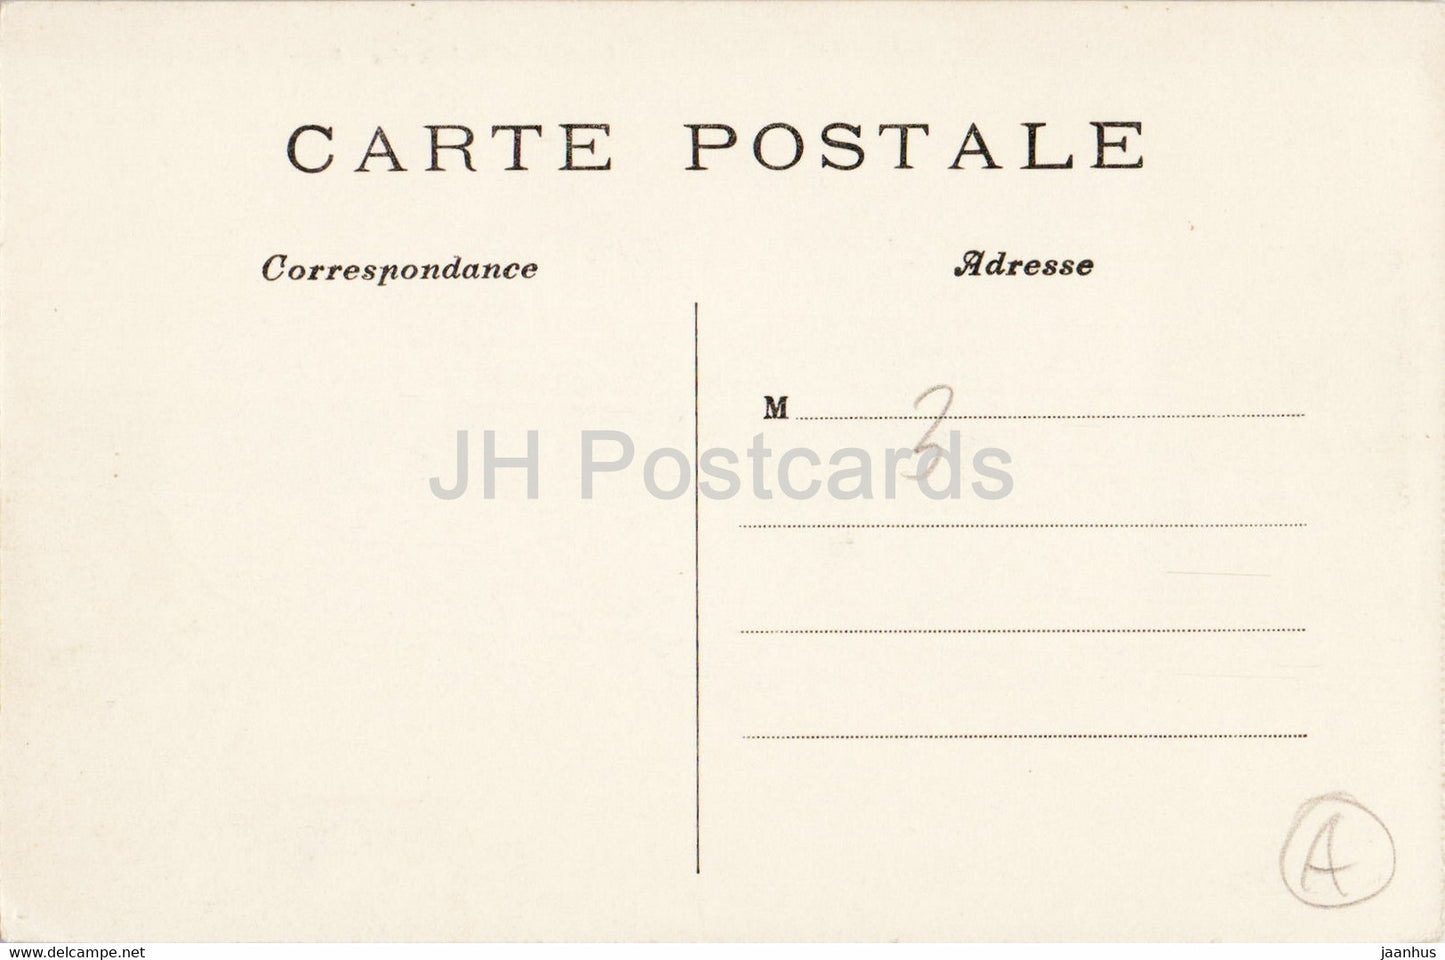 Paris - Le Grand Palais des Champs Elysees - 10 - old postcard - France - unused